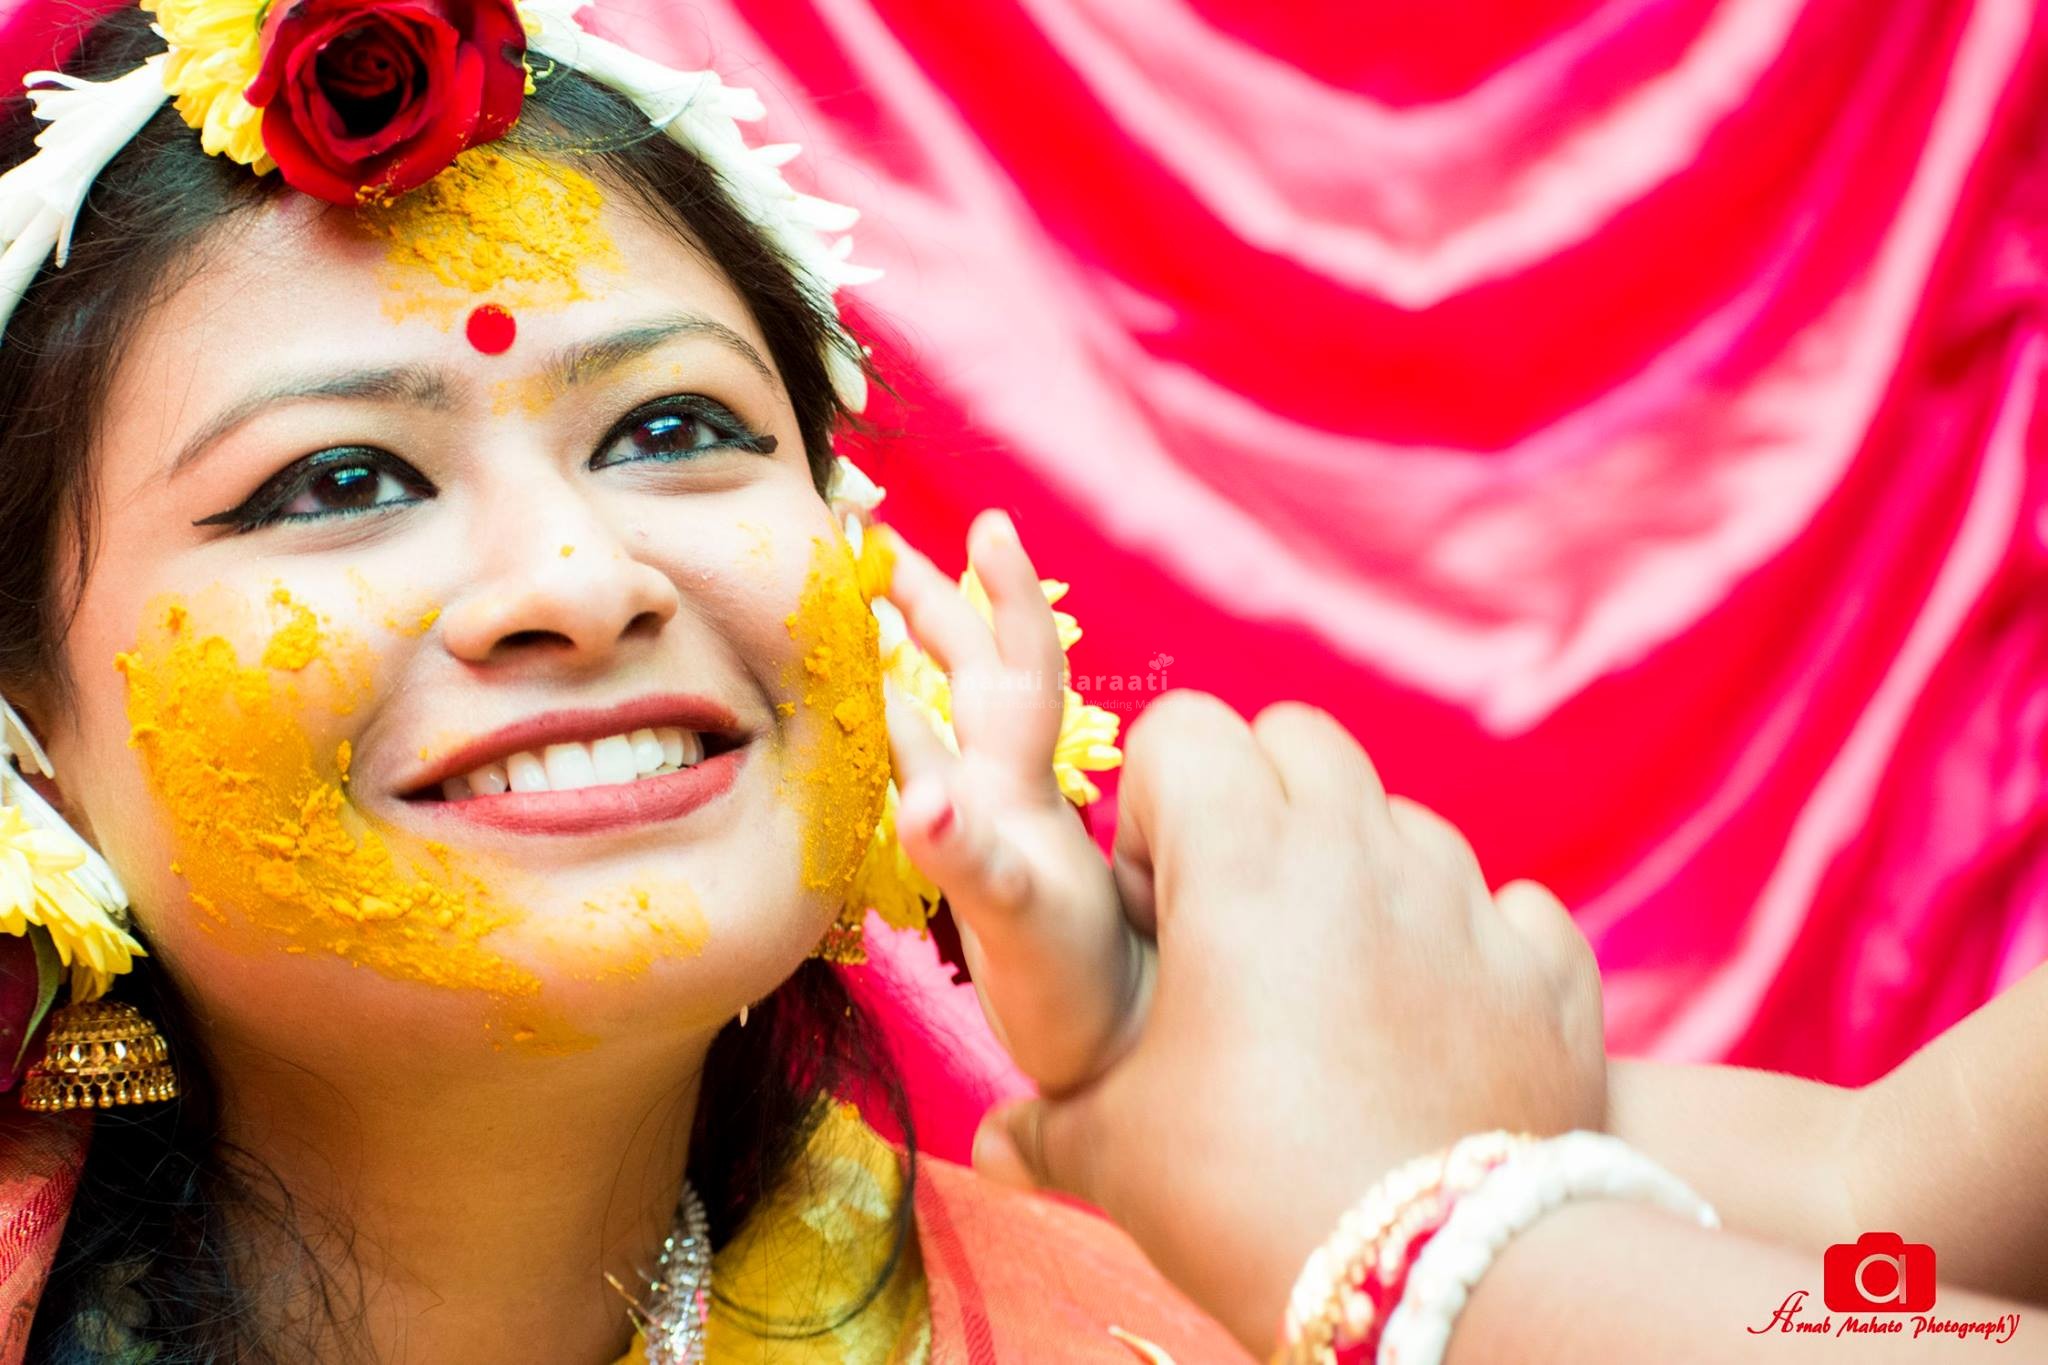 Pin by Diya Goyal on bridal | Indian bride photography poses, Indian wedding  poses, Bride photos poses